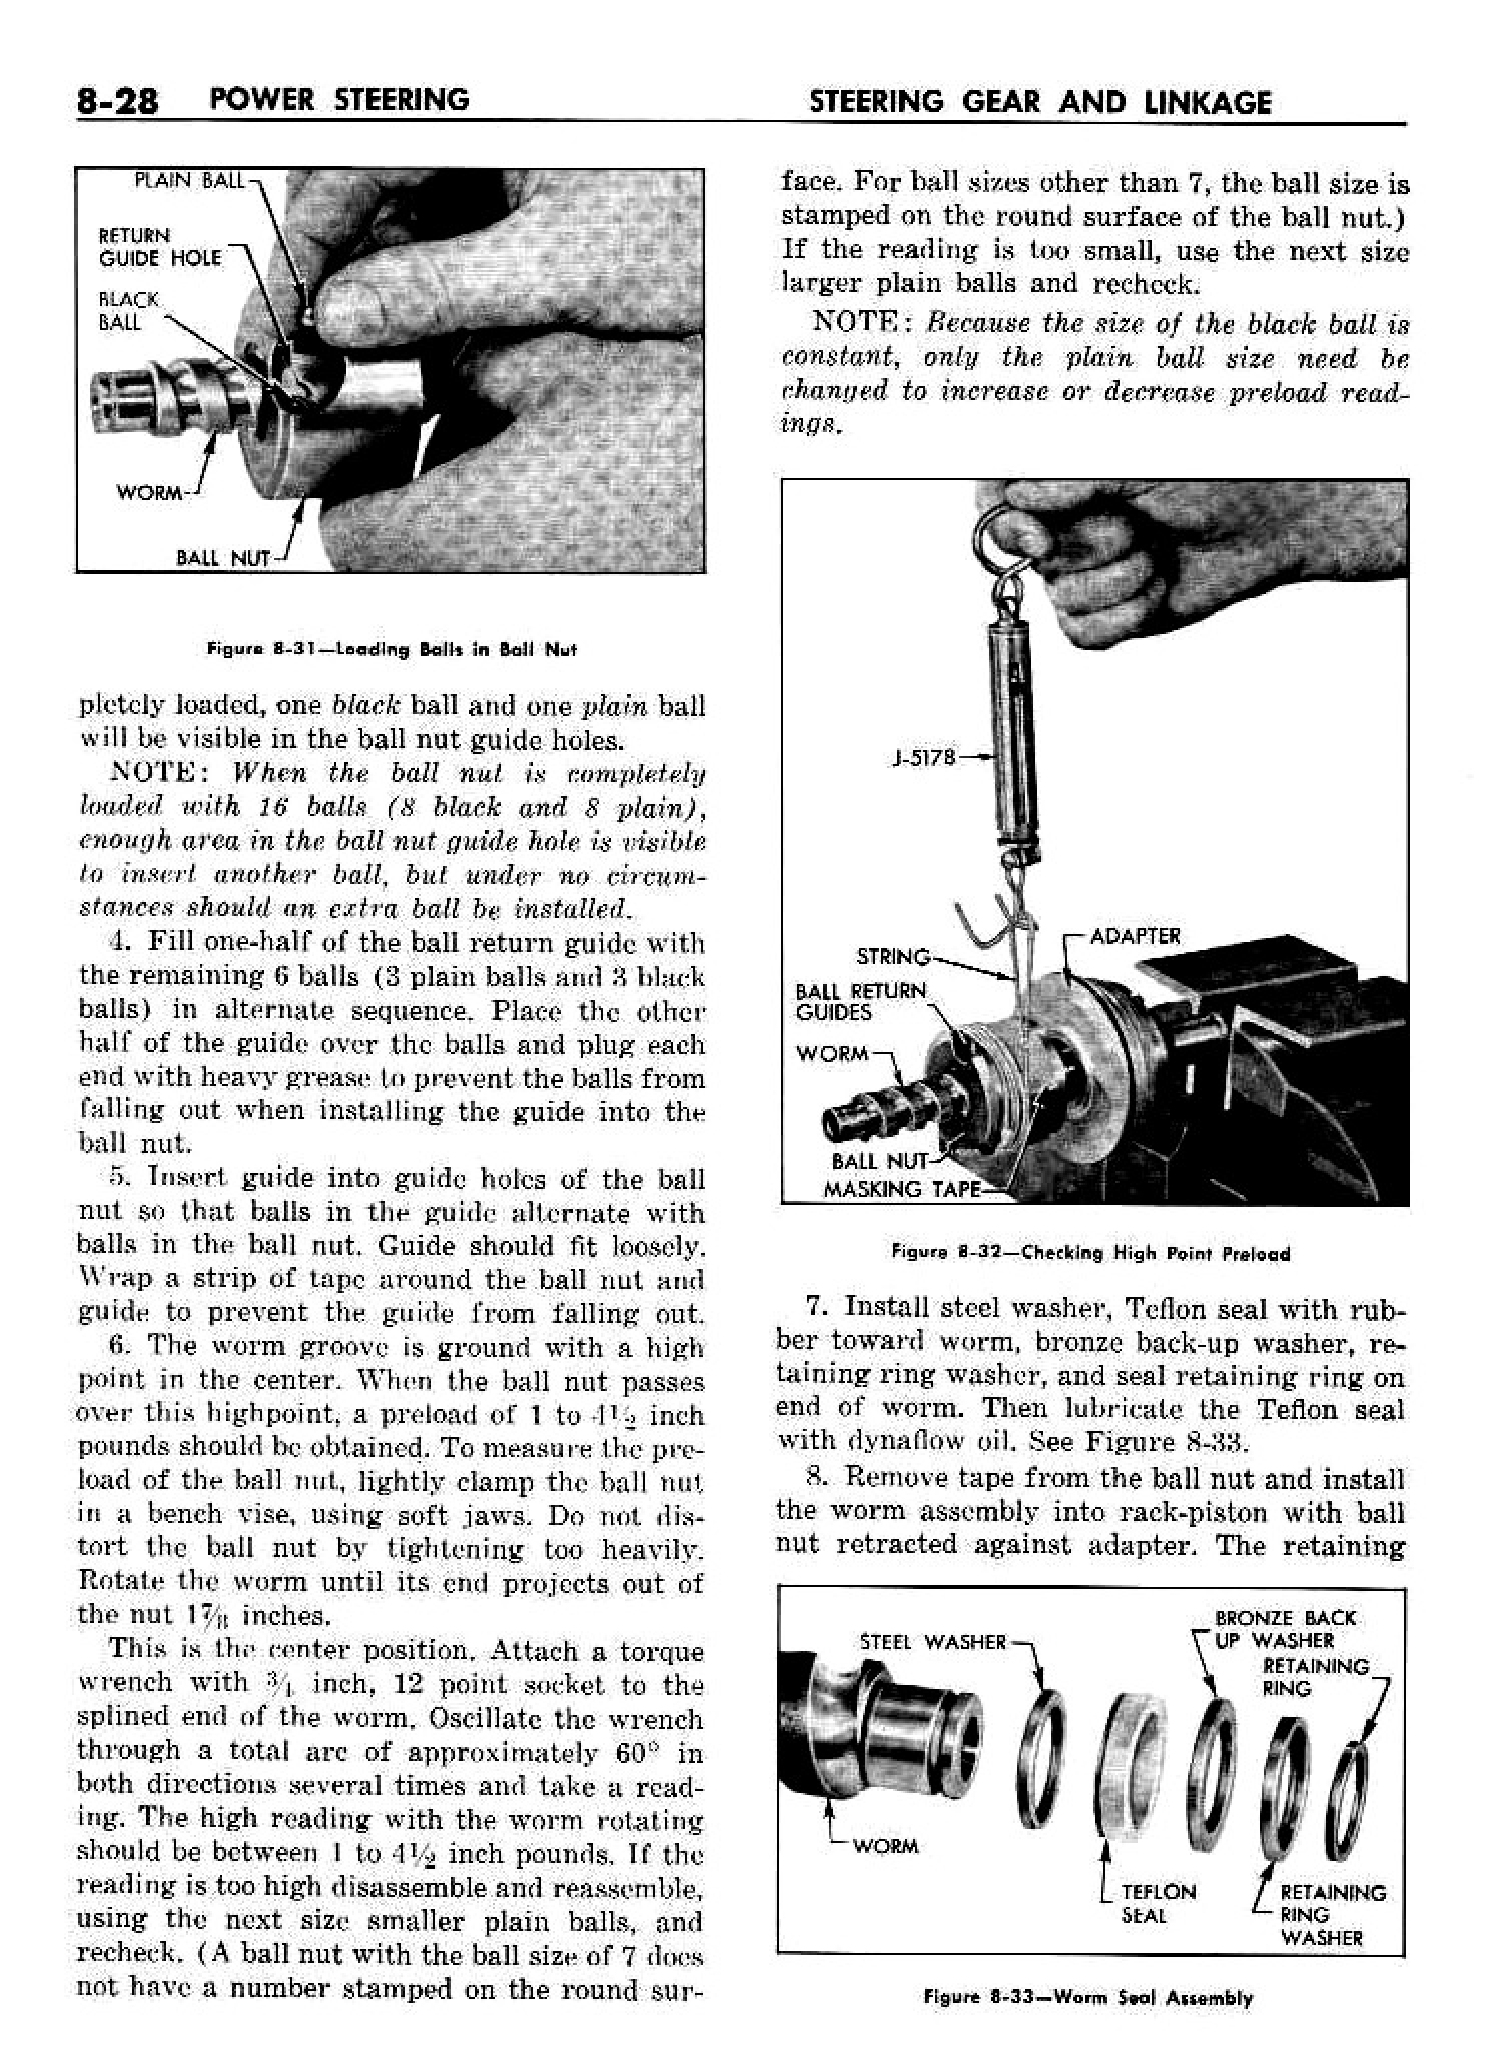 n_09 1958 Buick Shop Manual - Steering_28.jpg